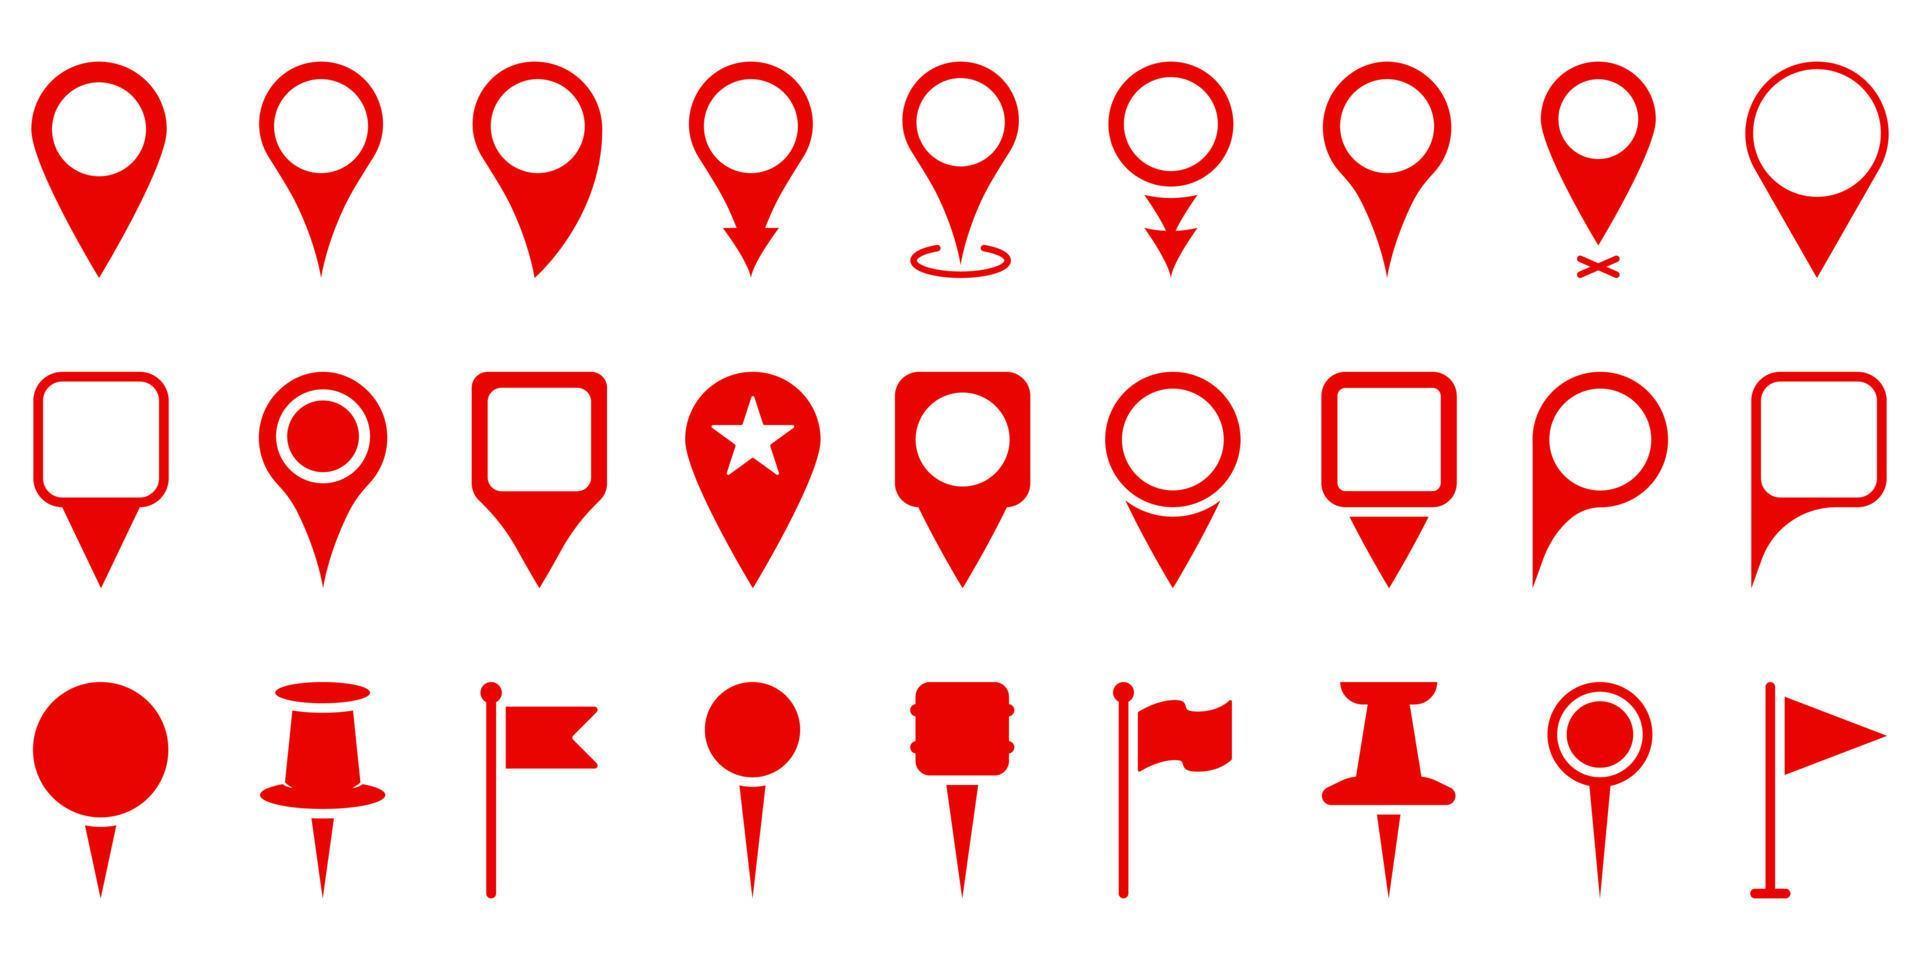 rode locatie pinnen instellen silhouet pictogram. markeerpunt op kaart, plaats locatiepictogram. vlagteken, punaiseteken. aanwijzer navigatie symbool. rode gps-tagverzameling. geïsoleerde vectorillustratie. vector